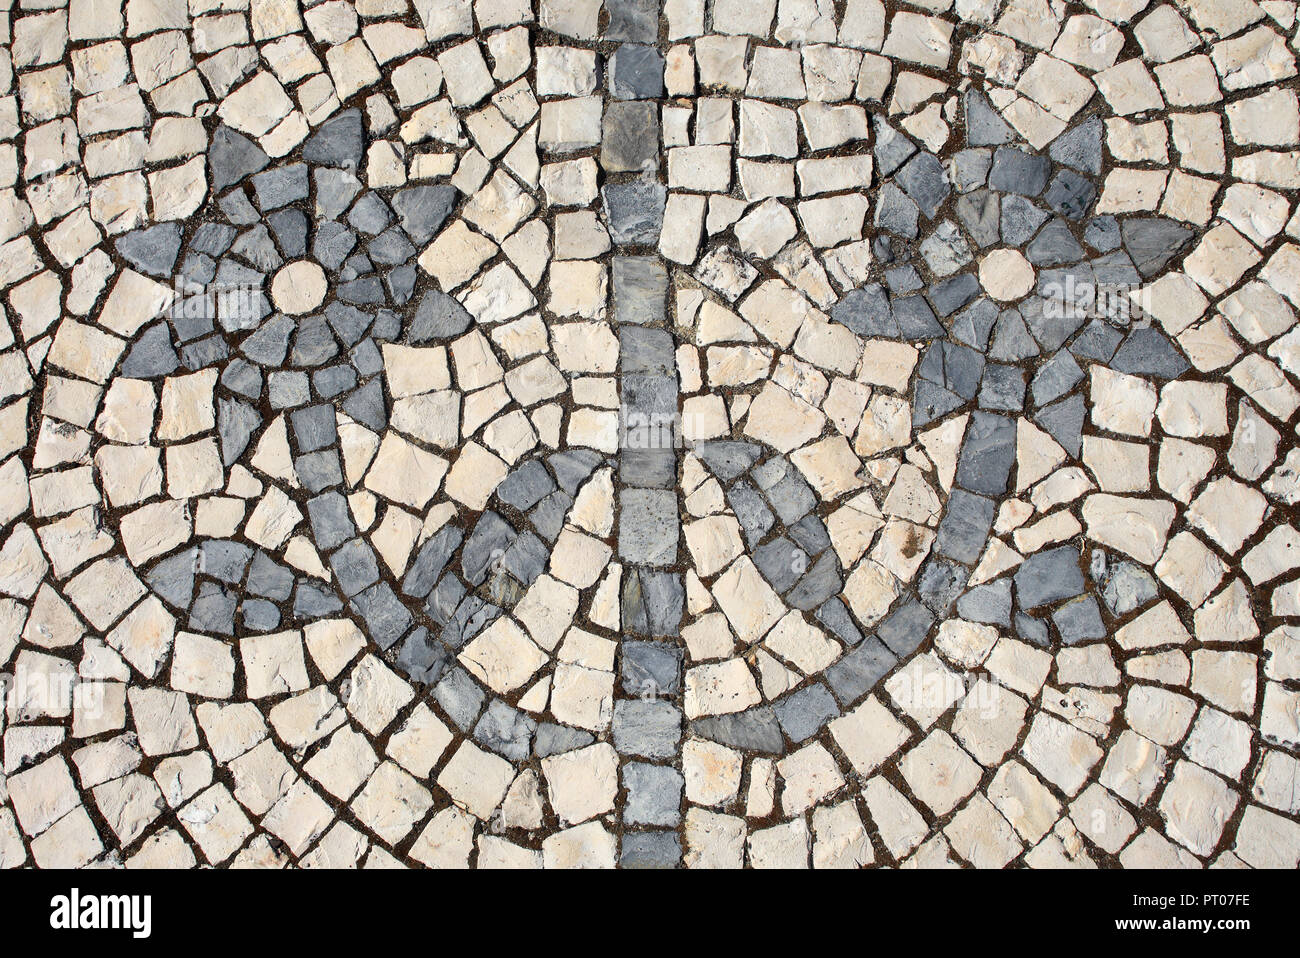 Noir et blanc typique, le portugais 'calcada' mosaic cobblestone paving représentant des fleurs. Lisbonne, Portugal. Banque D'Images